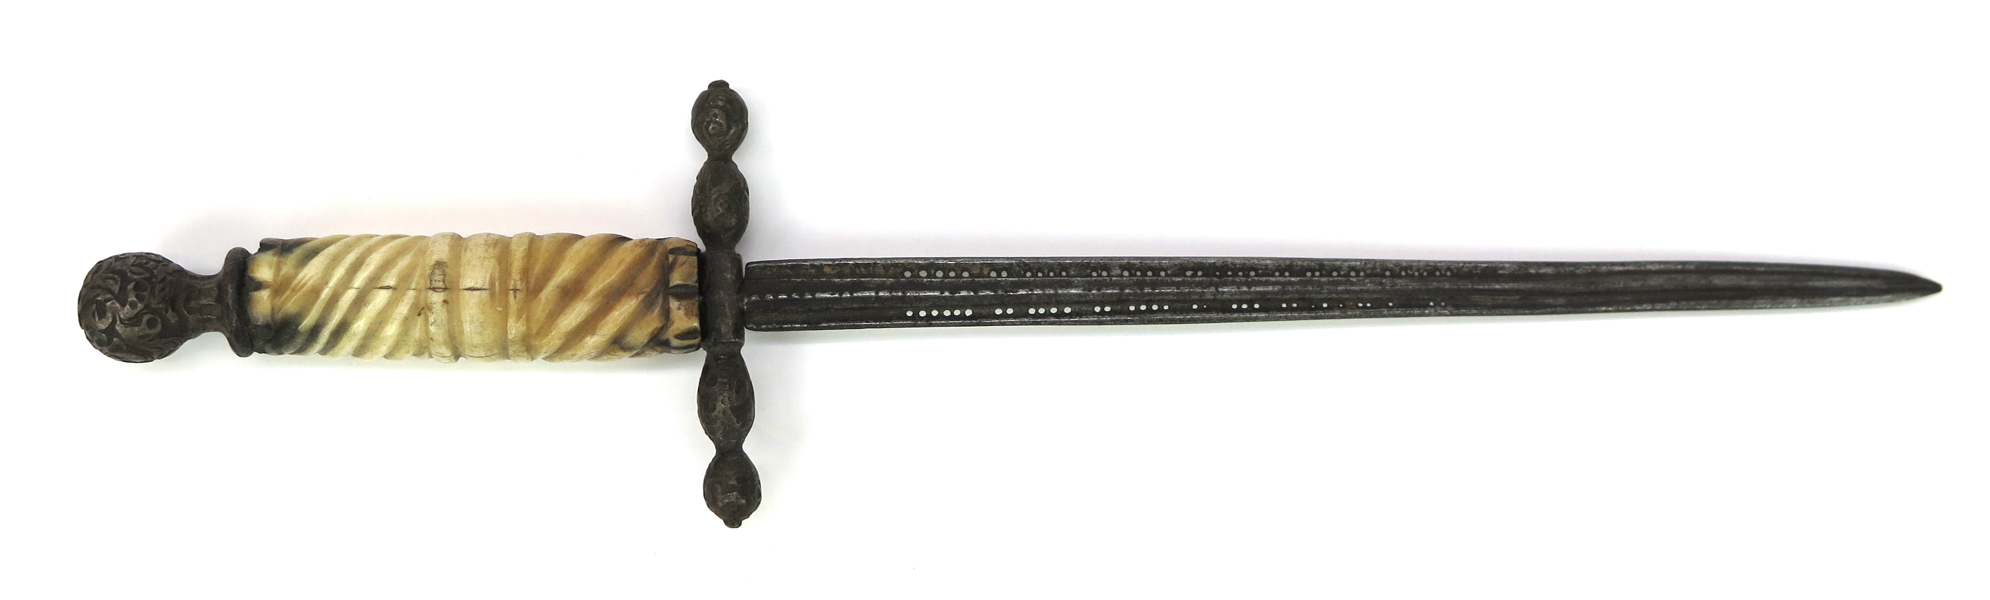 Vänsterhandsdolk, stål med benskaft, så kallad stiletto, 1600-tal, l 27 cm_37209a_lg.jpeg